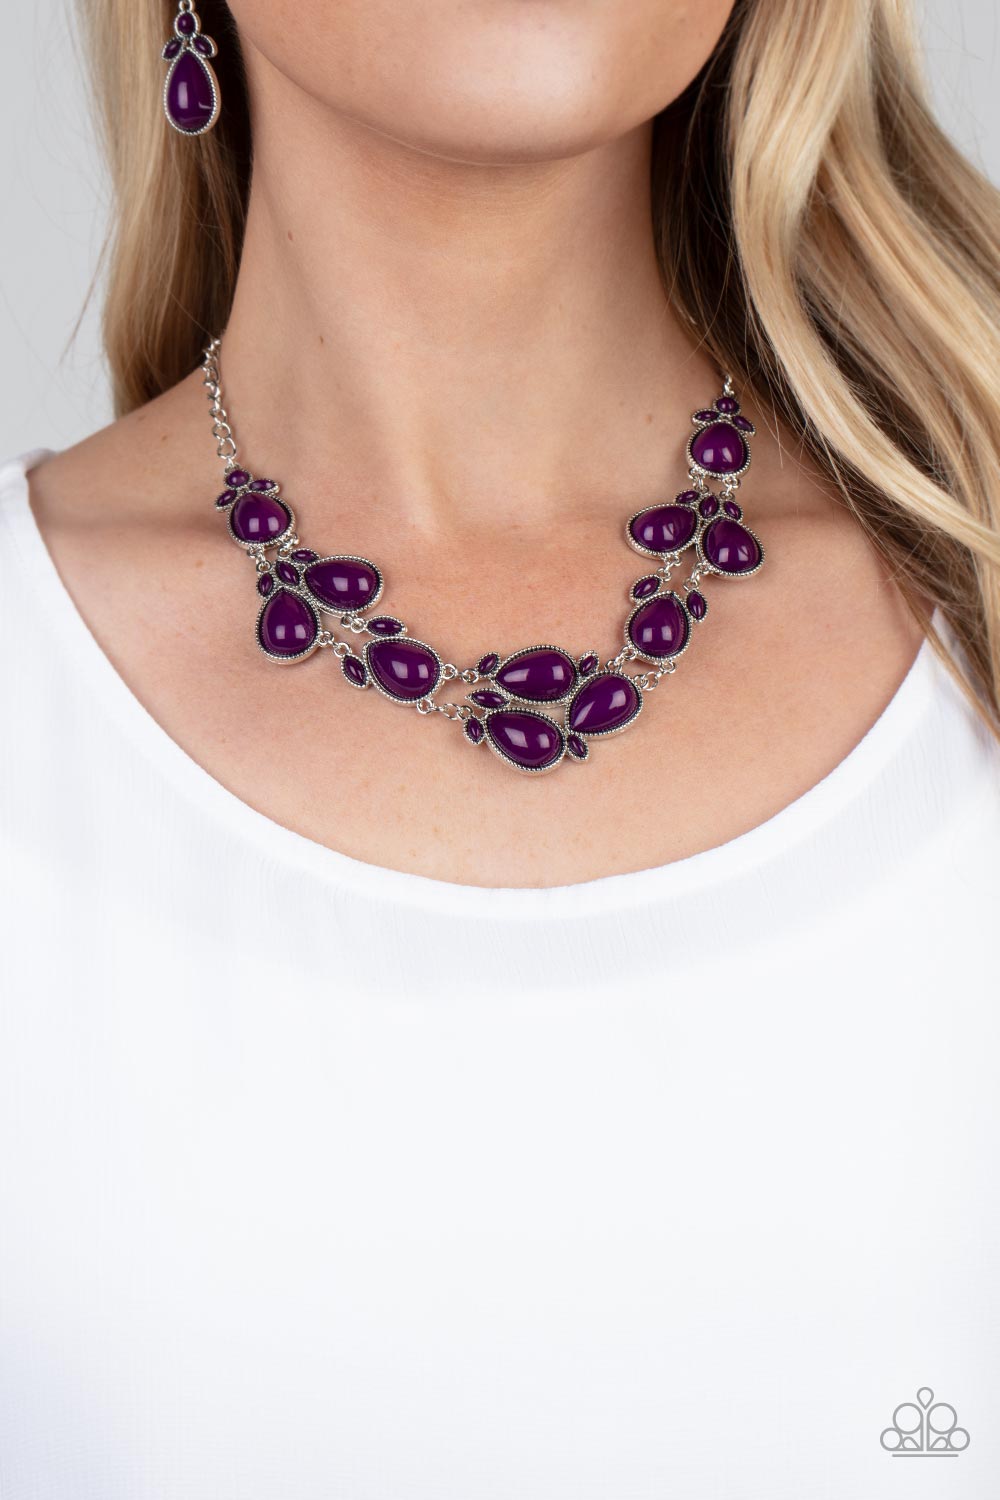 Botanical Banquet - Purple Necklace - Paparazzi Accessories - Paparazzi Accessories 